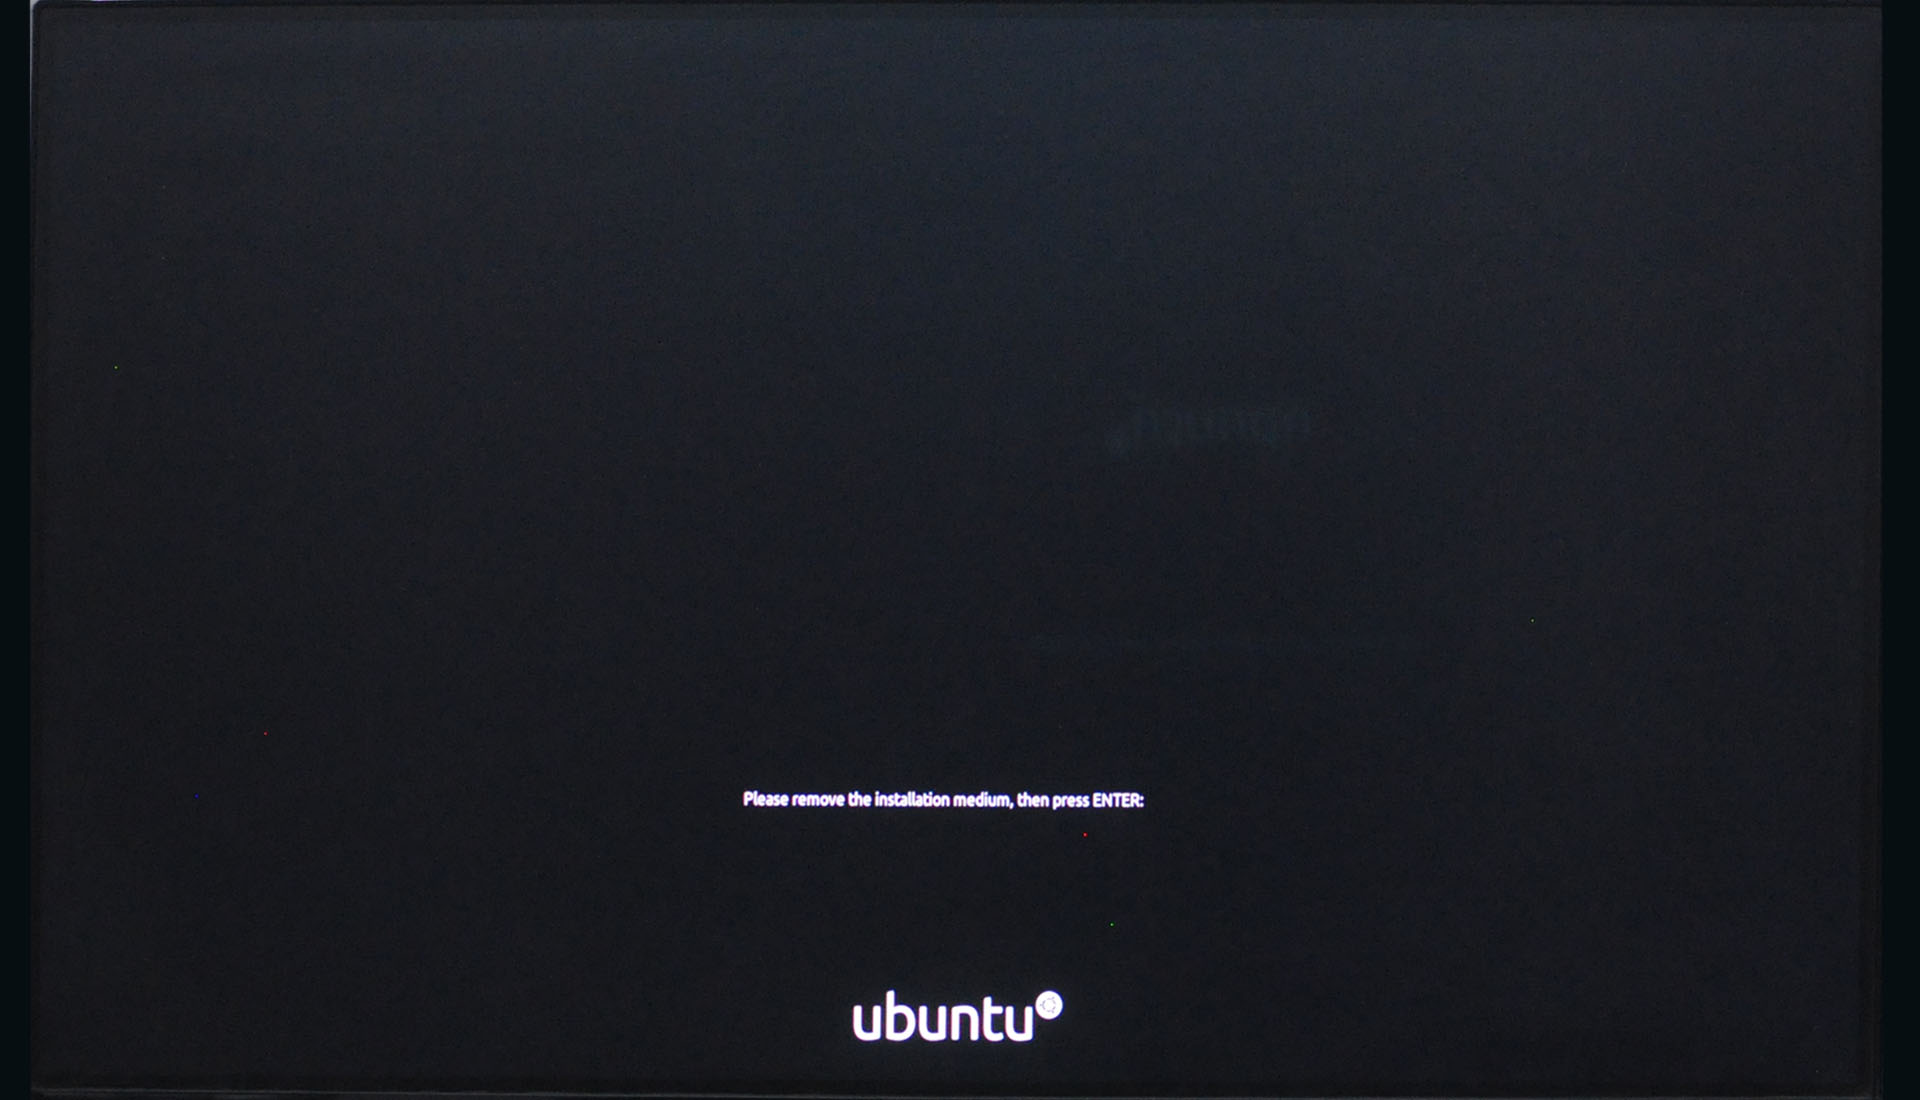 Install Ubuntu 20.04 LTS - Installation Media